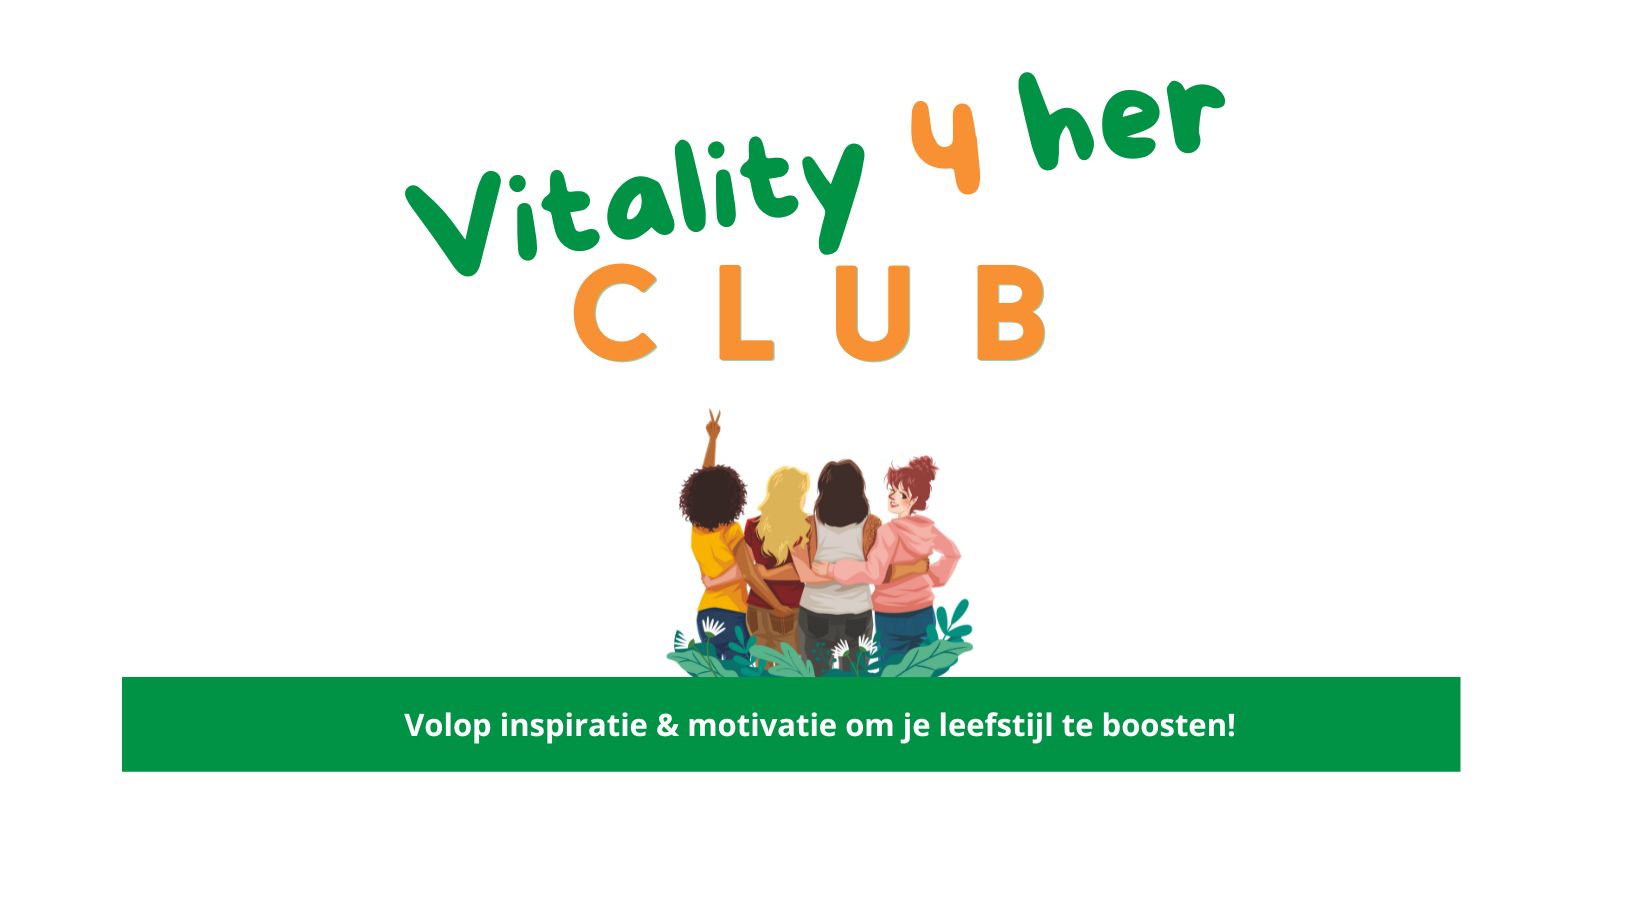 Vitality 4 her Club